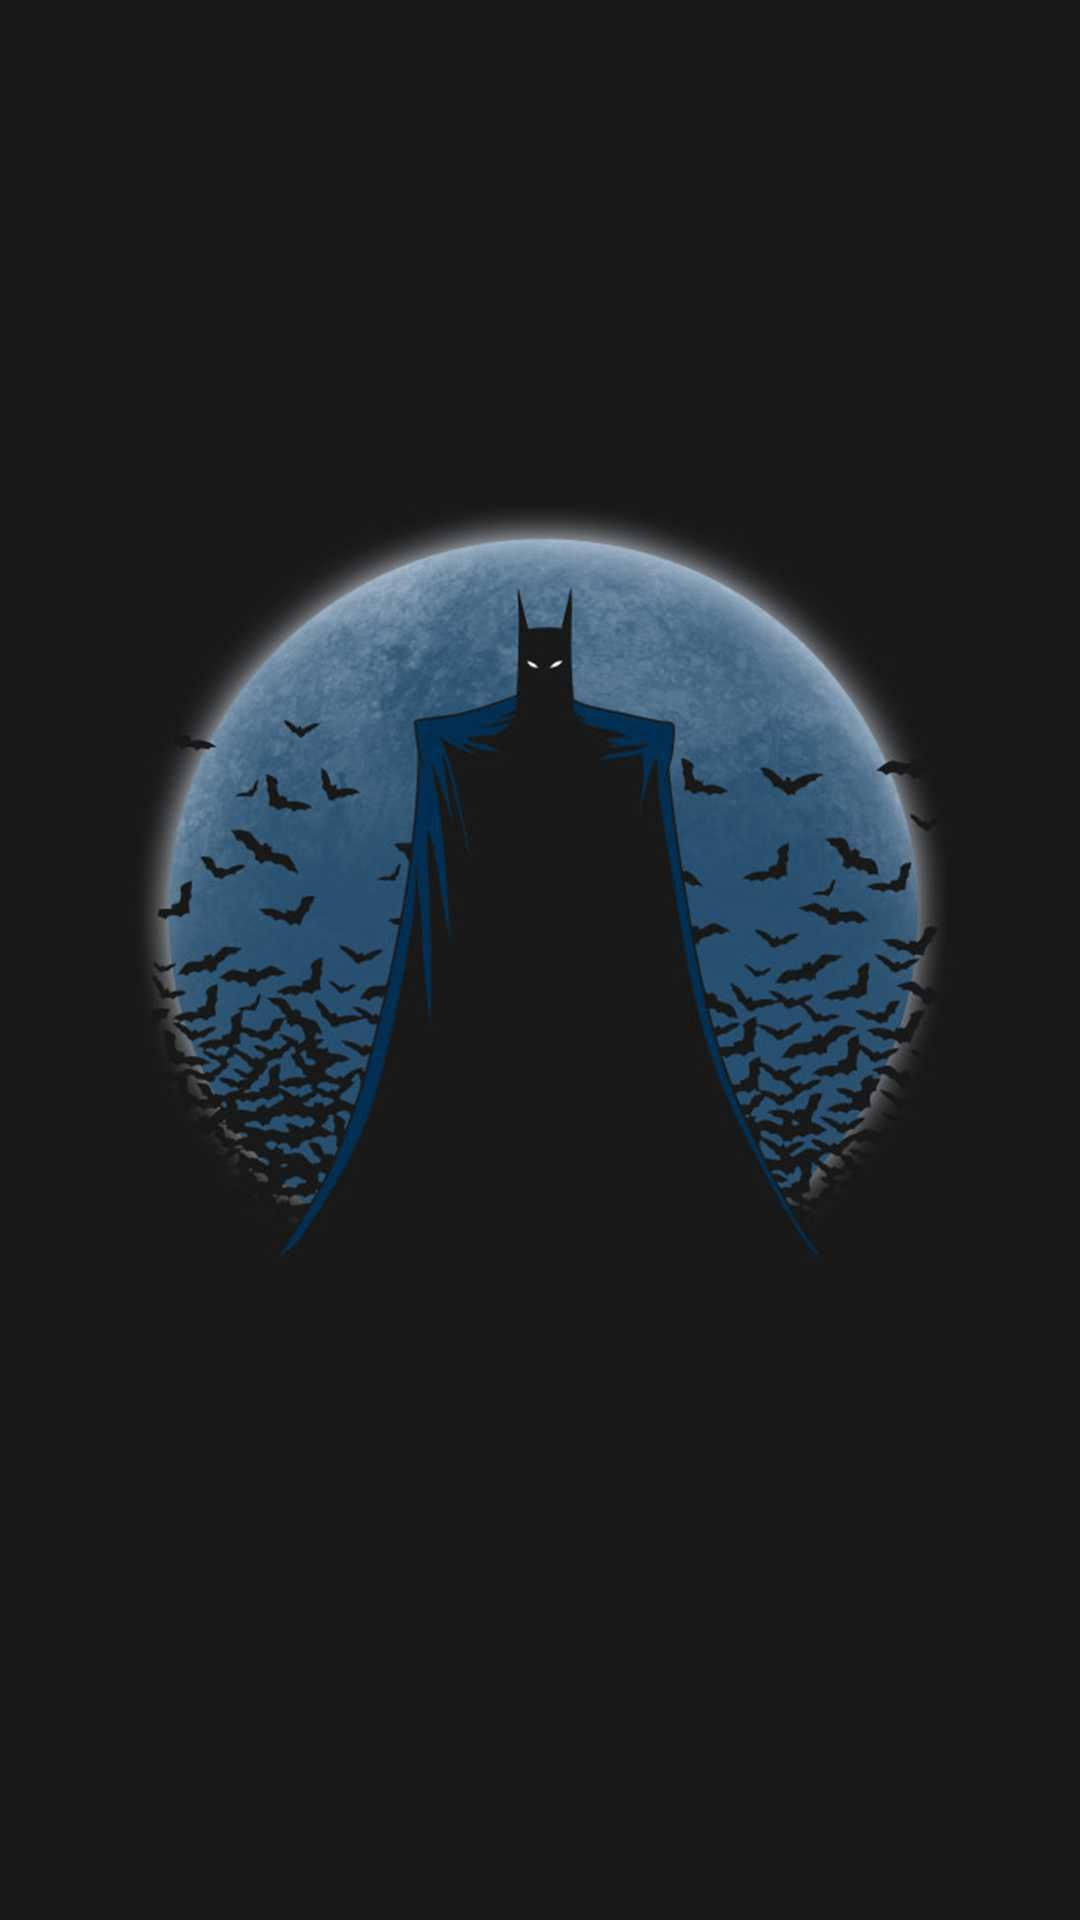 Blåmåne Bakom Mörka Batman På Iphone. Wallpaper